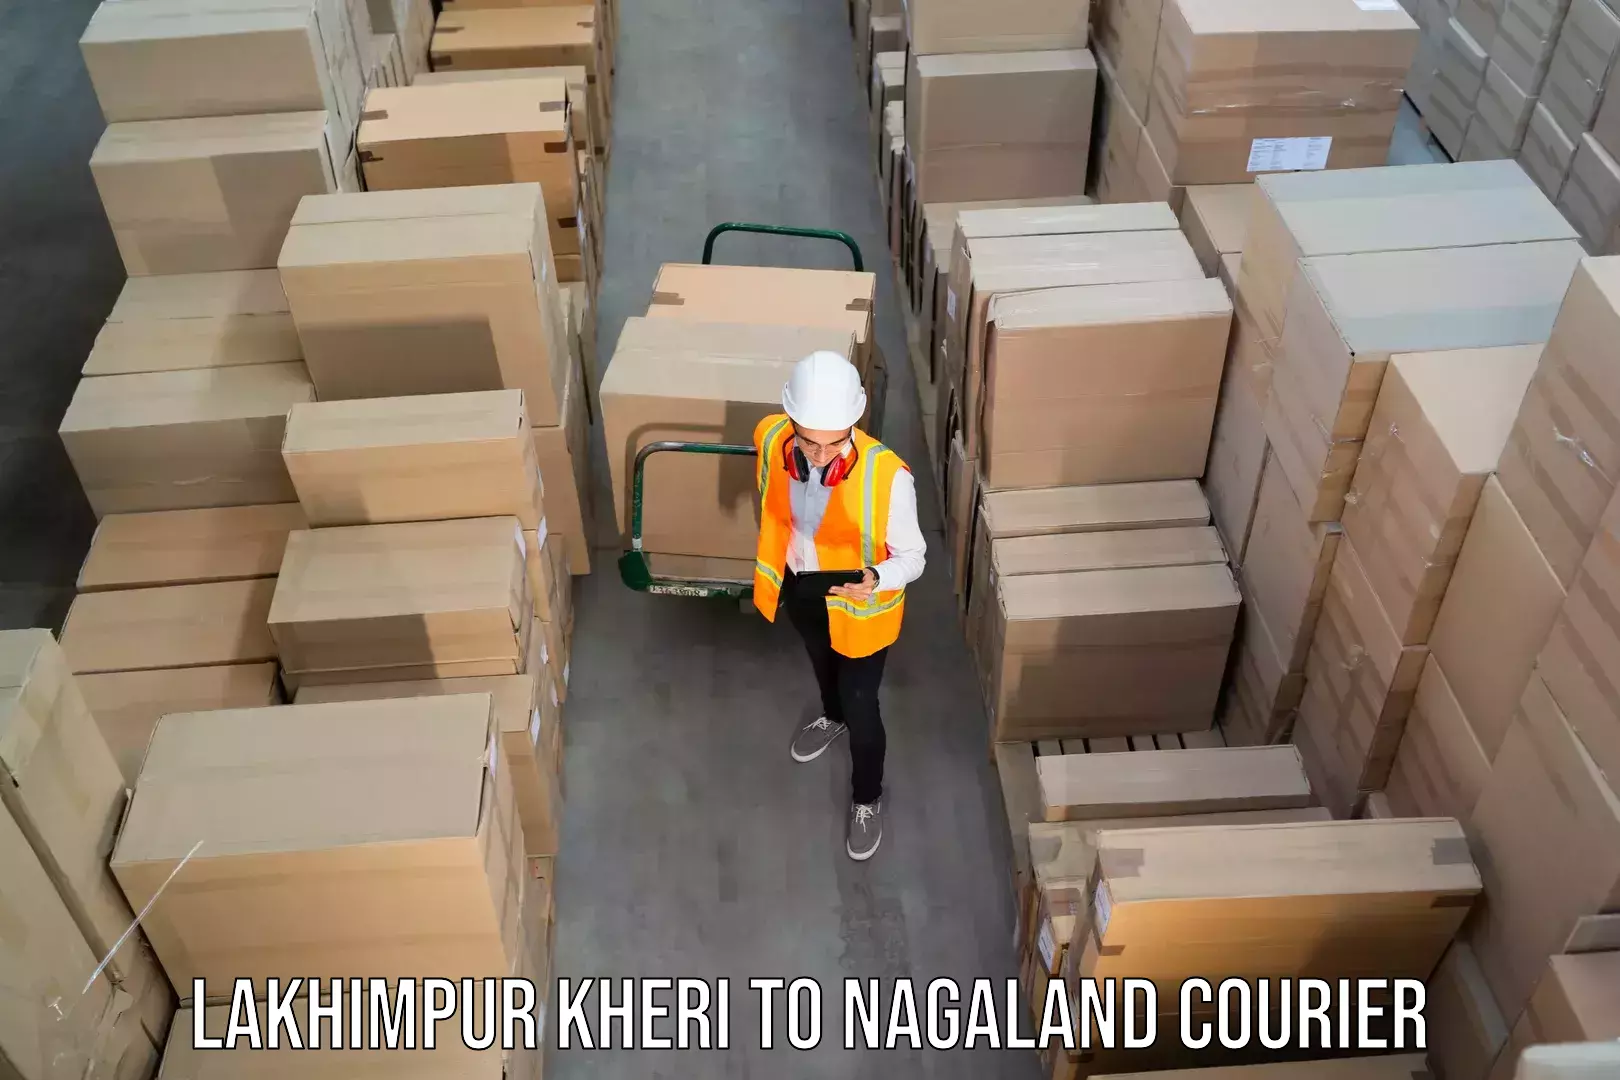 24/7 courier service Lakhimpur Kheri to Dimapur